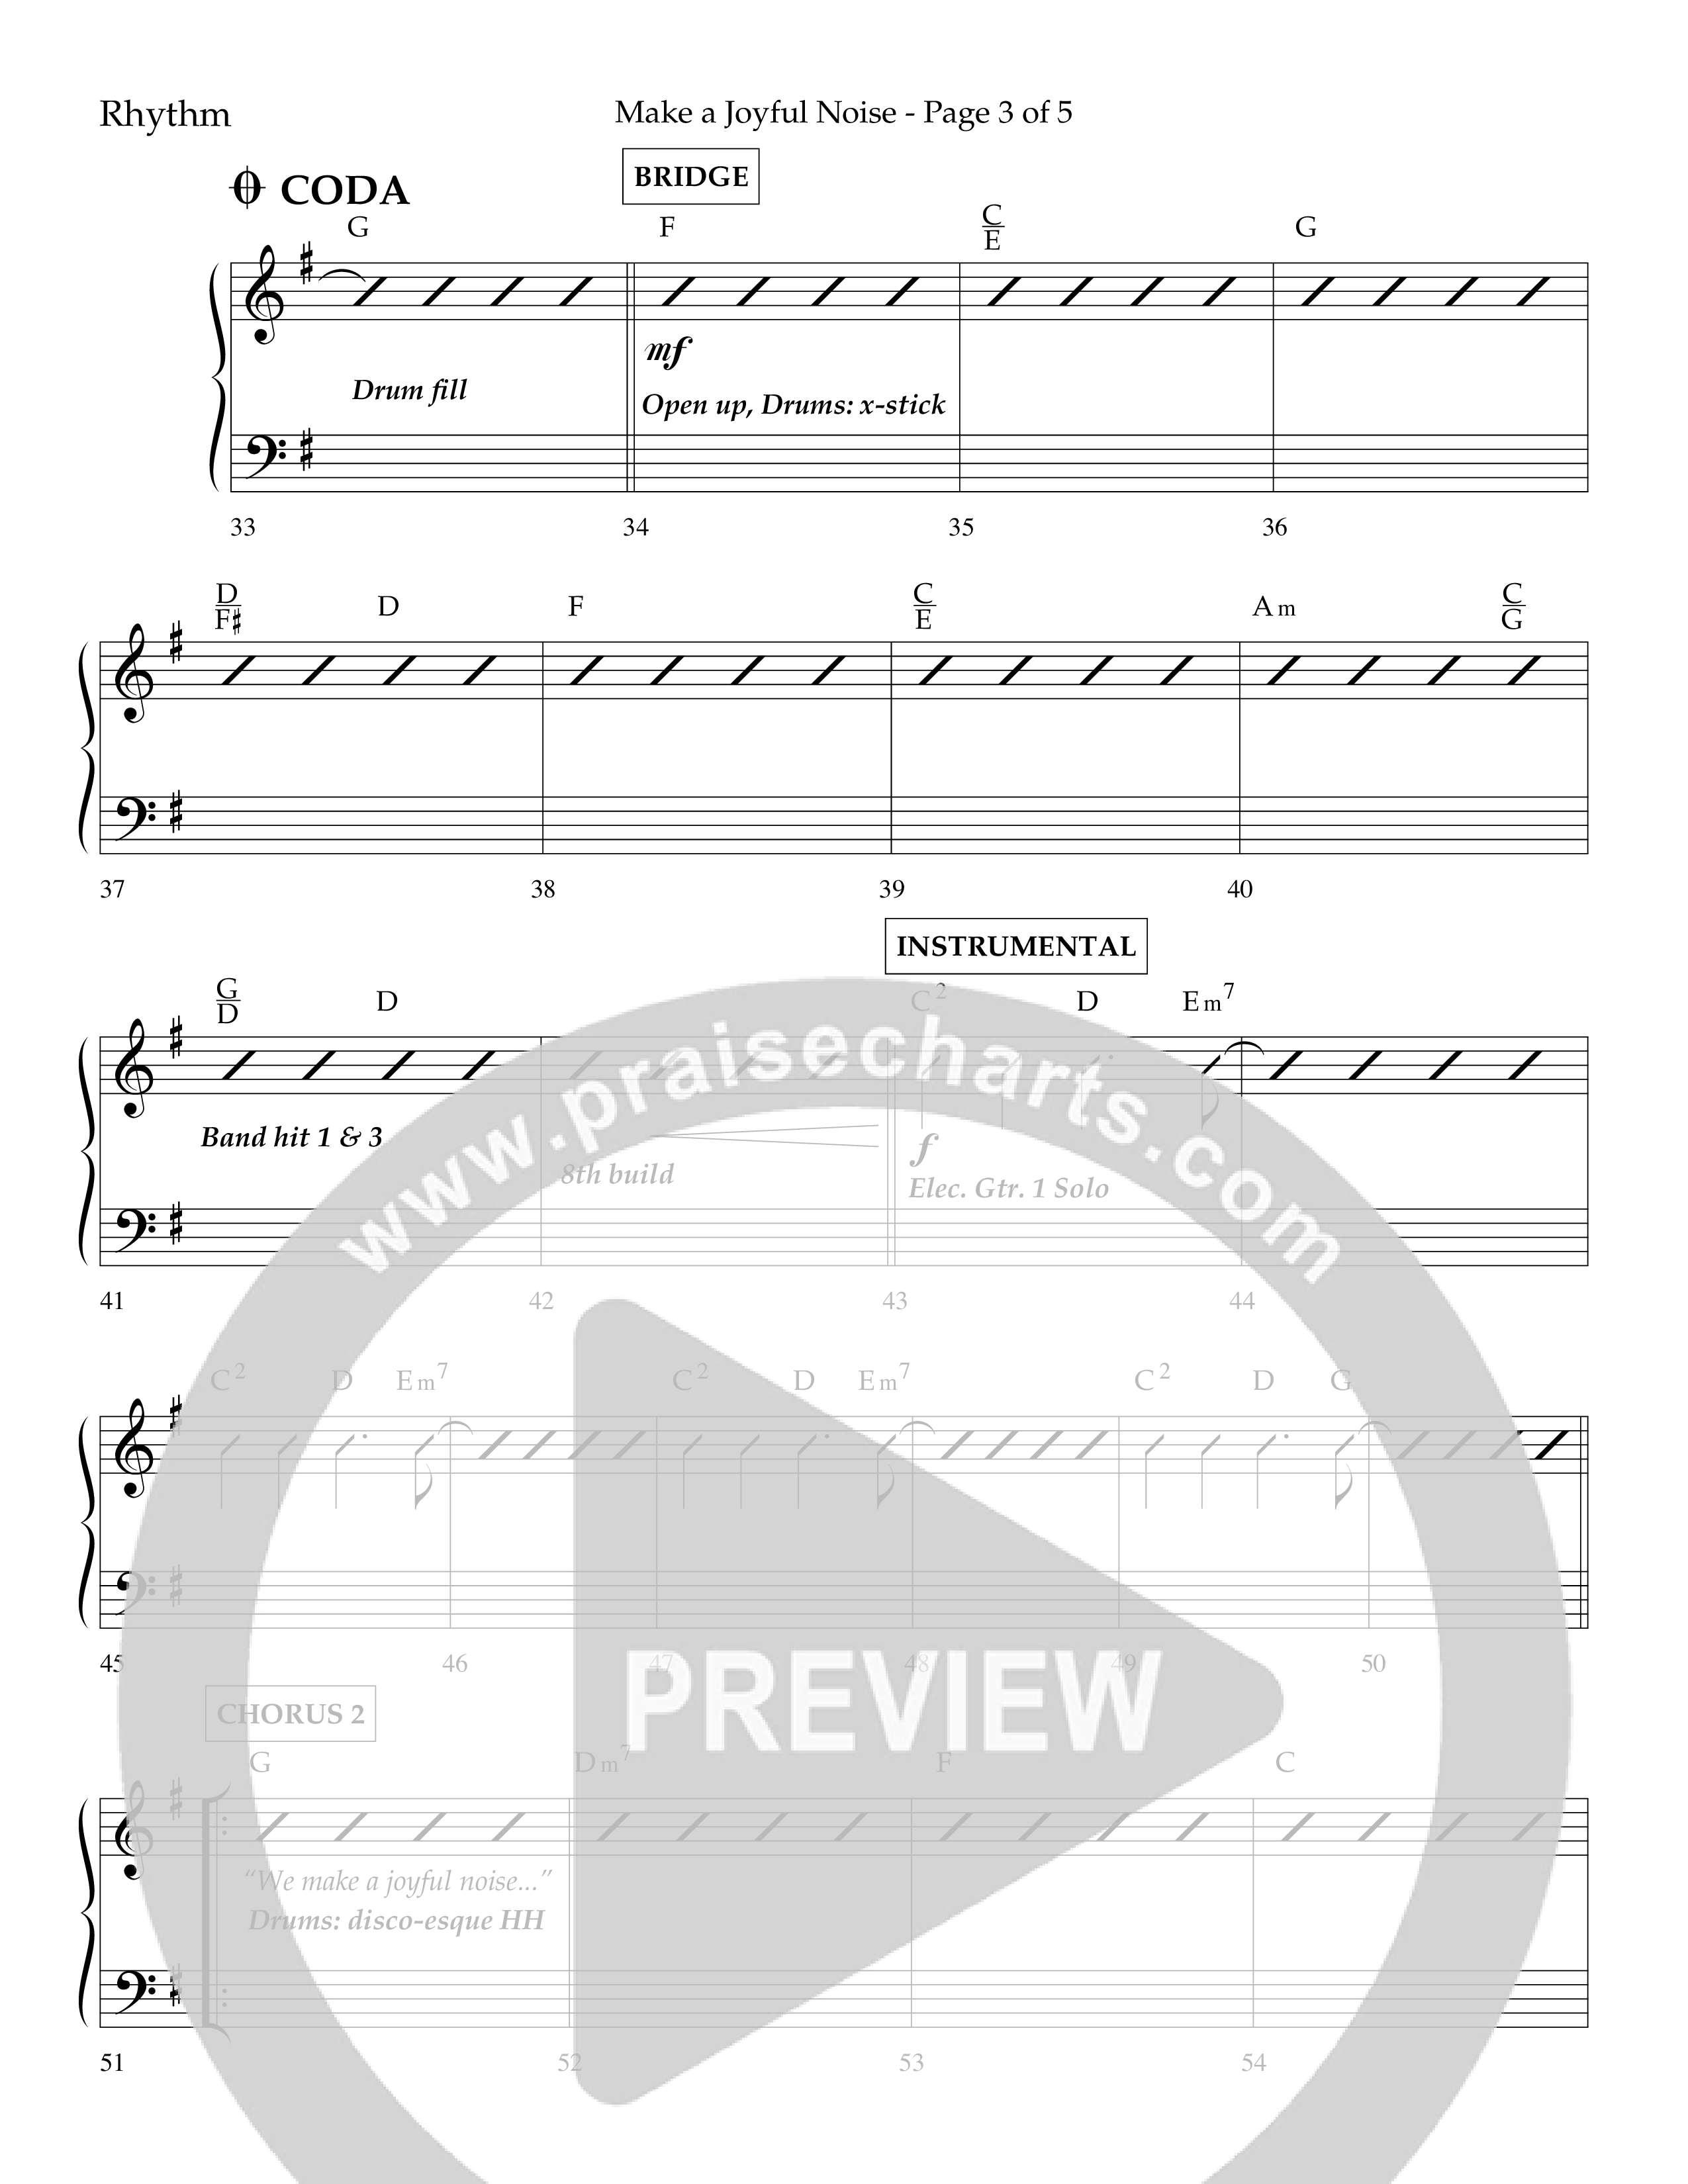 Make A Joyful Noise (Choral Anthem SATB) Lead Melody & Rhythm (Lifeway Choral / Arr. David Wise / Orch. Daniel Semsen)